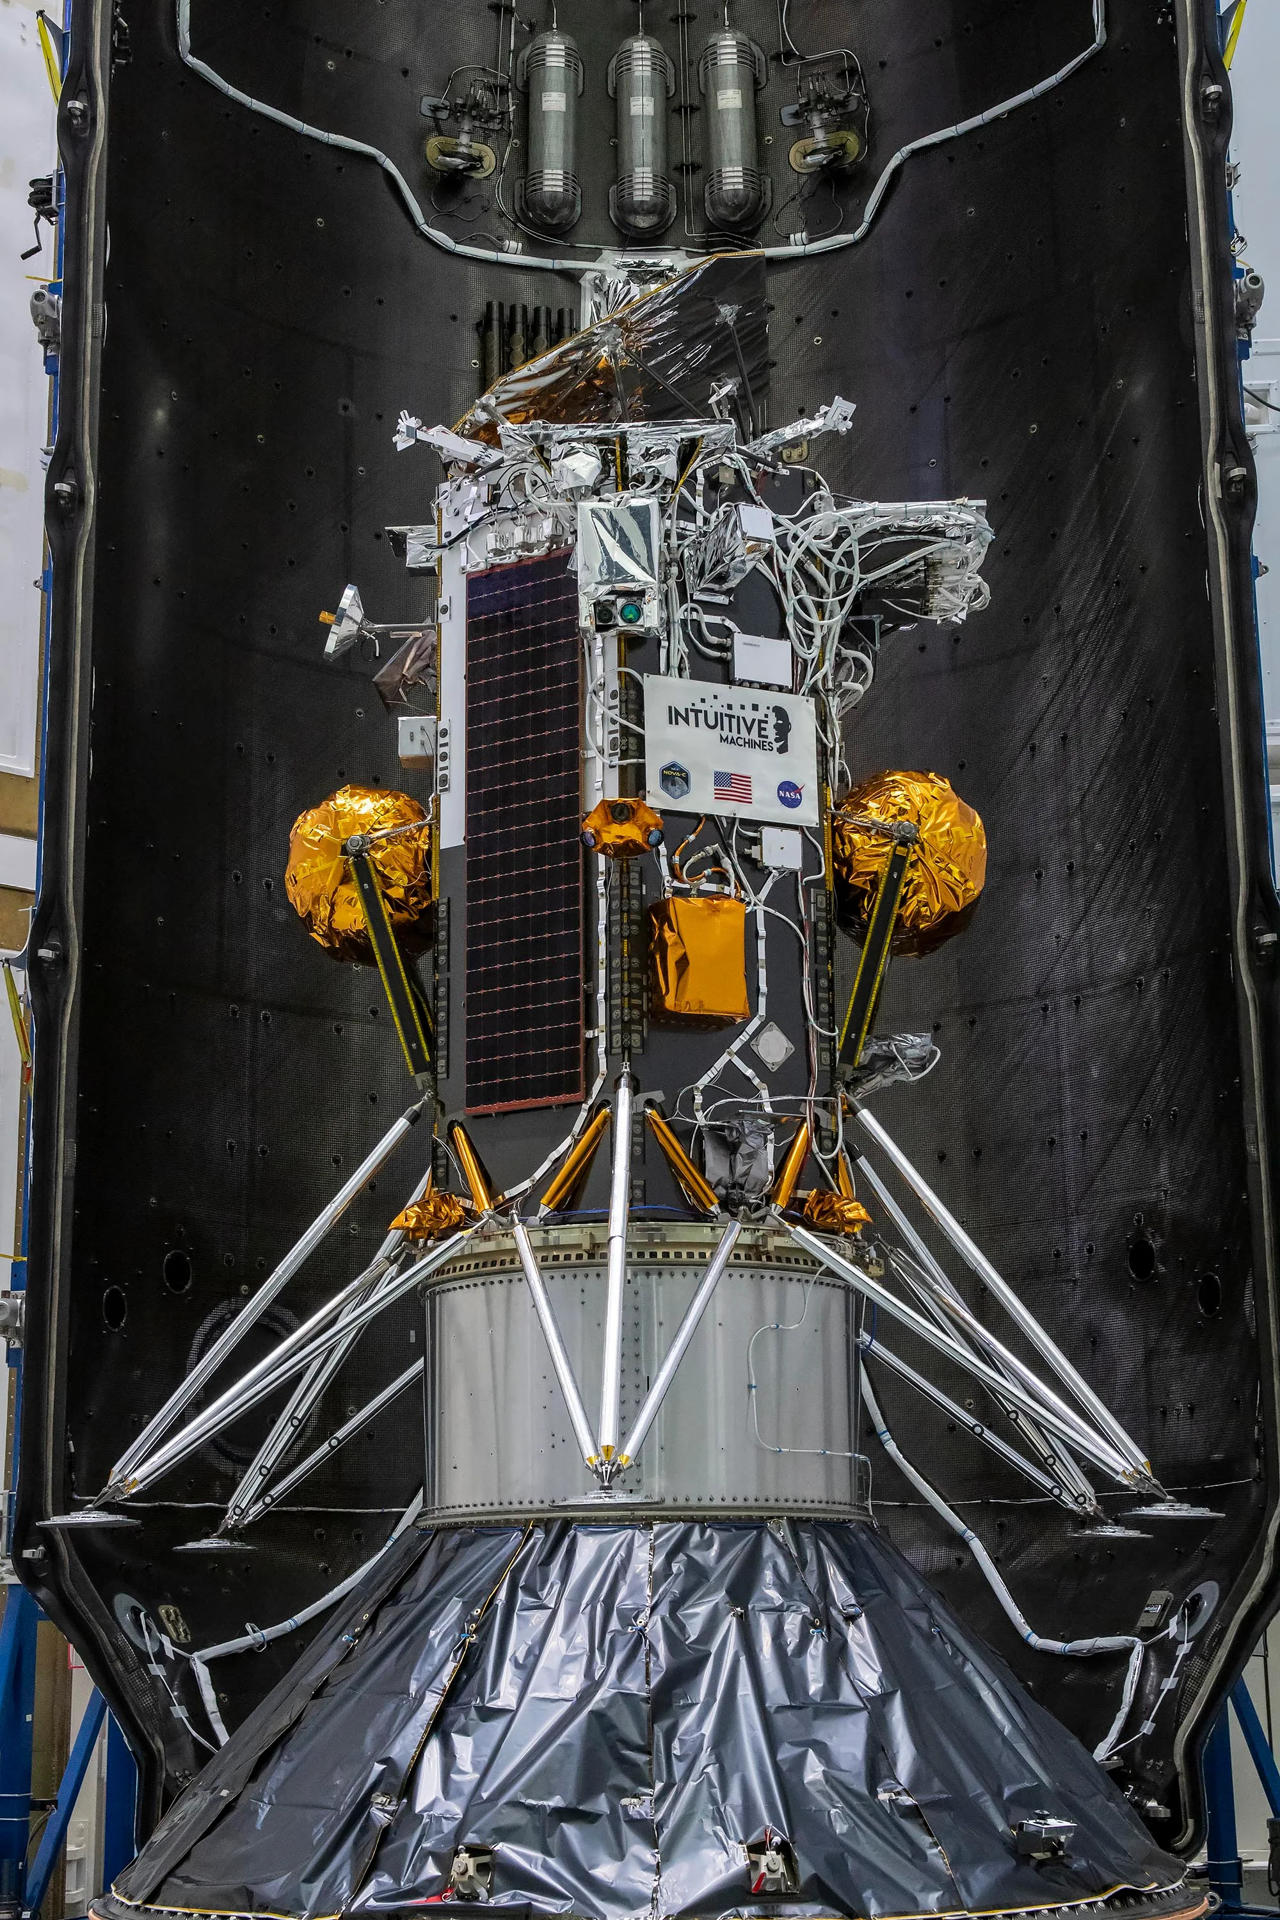 Fotografía cedida por Space X donde se muestra el módulo de aterrizaje lunar Nova-C encapsulado dentro del carenado de un cohete Falcon 9 en preparación para el lanzamiento, como parte de la iniciativa Servicios Comerciales de Carga Útil Lunar (CLPS, en inglés) de la NASA y la campaña Artemis. EFE/SpaceX /SOLO USO EDITORIAL /NO VENTAS /SOLO DISPONIBLE PARA ILUSTRAR LA NOTICIA QUE ACOMPAÑA /CRÉDITO OBLIGATORIO